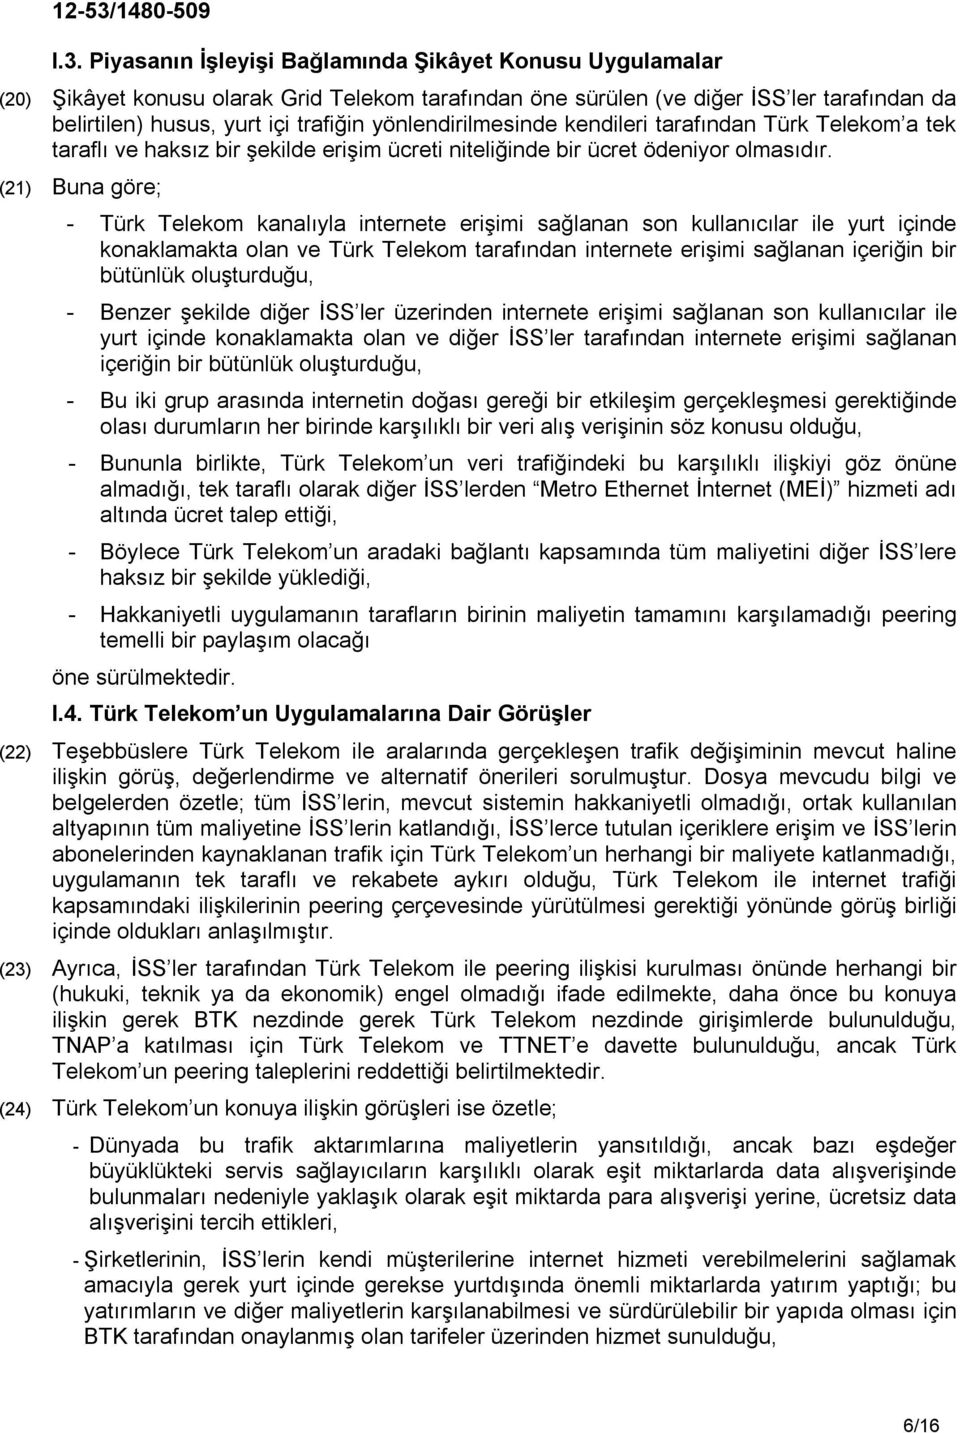 (21) Buna göre; - Türk Telekom kanalıyla internete erişimi sağlanan son kullanıcılar ile yurt içinde konaklamakta olan ve Türk Telekom tarafından internete erişimi sağlanan içeriğin bir bütünlük